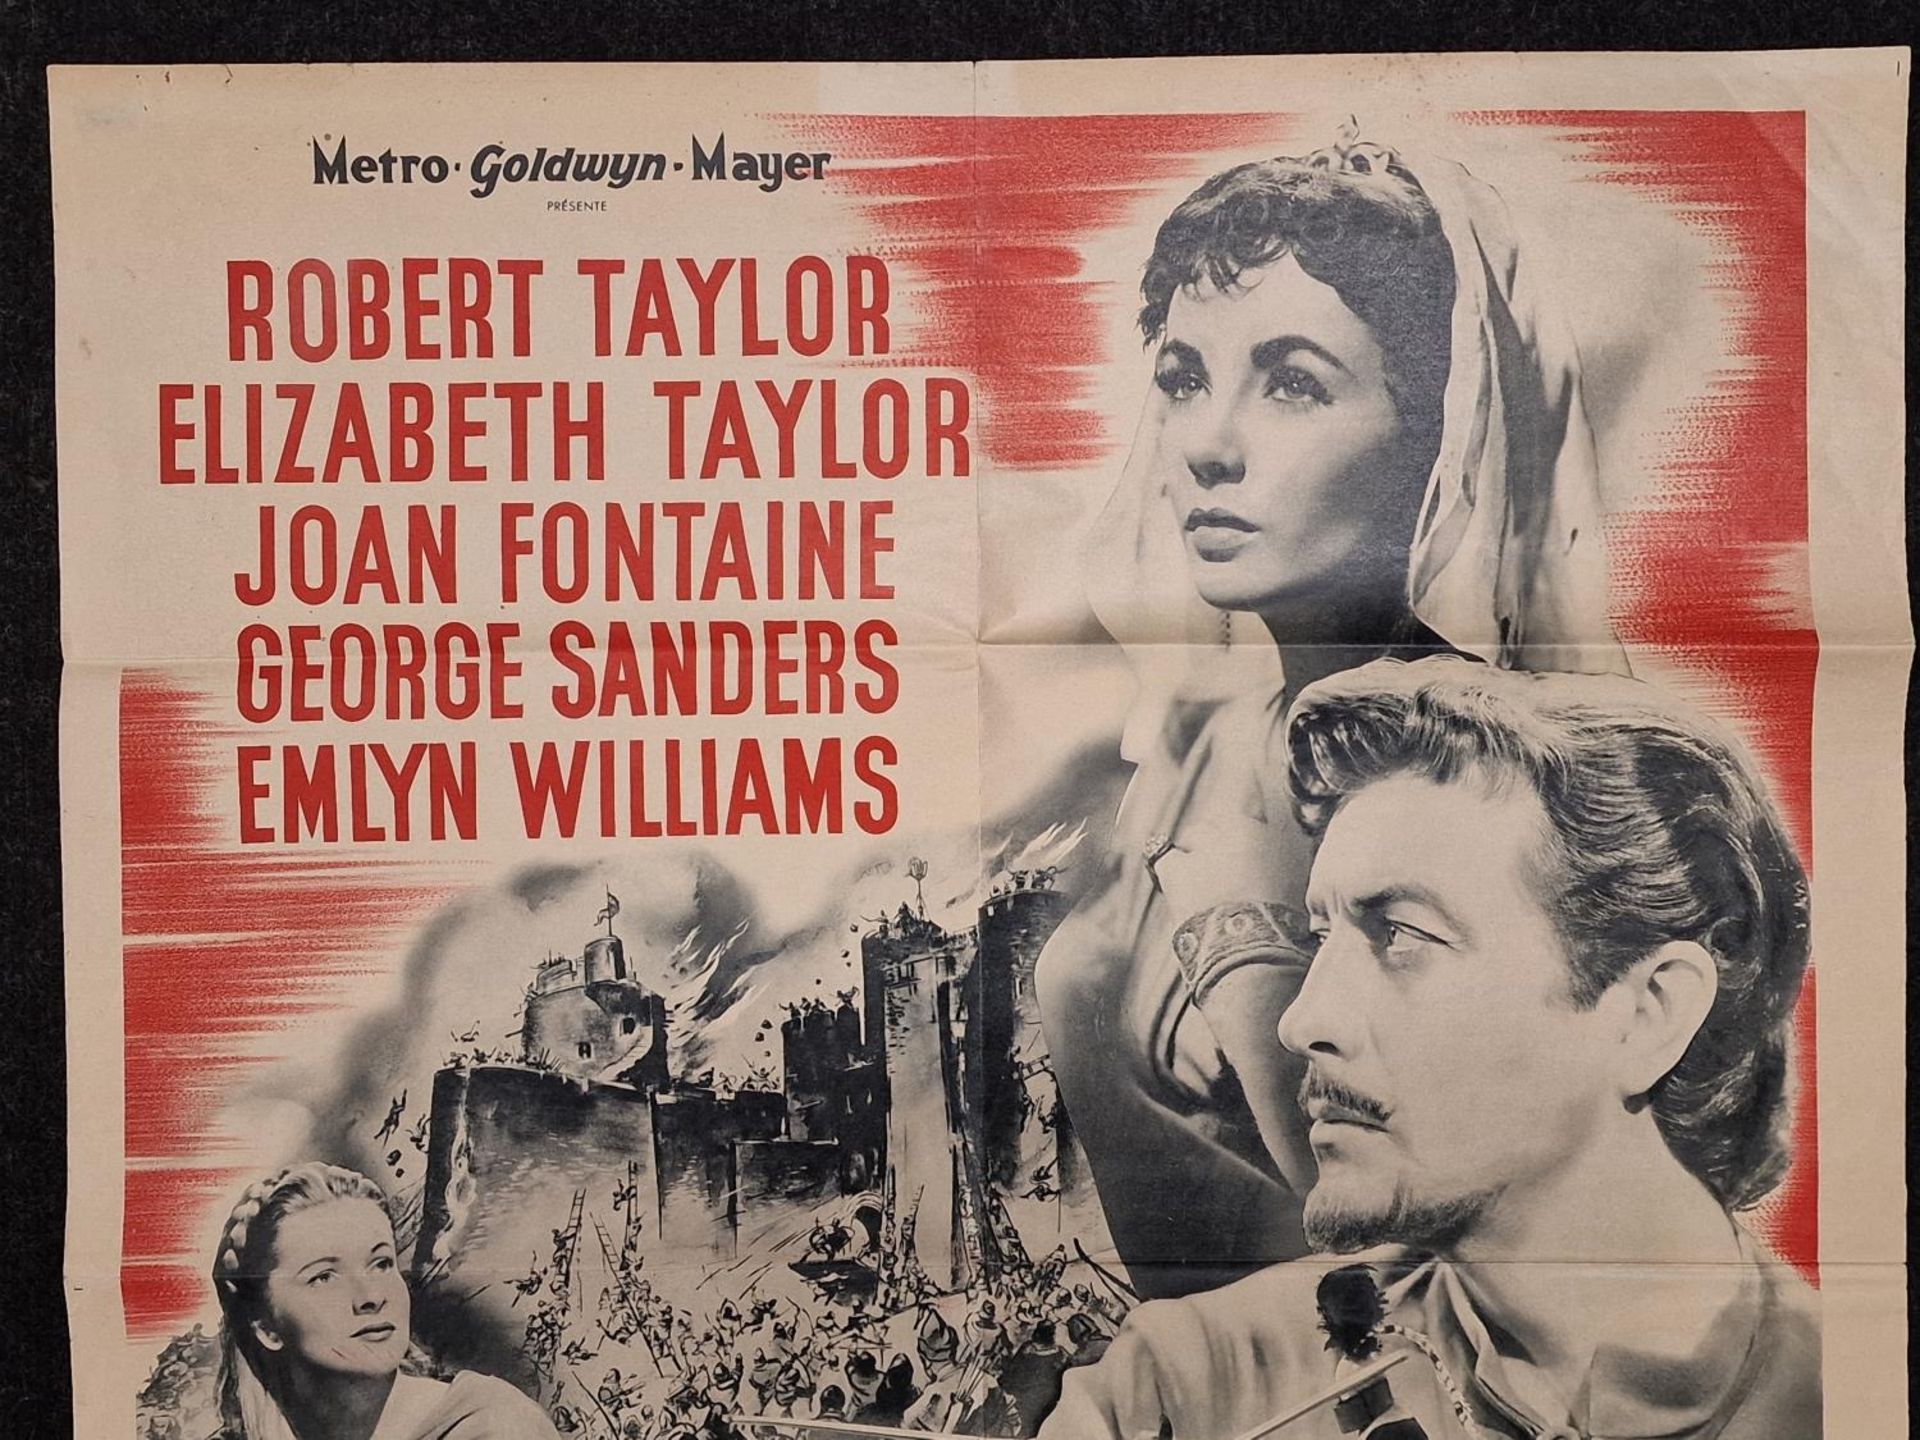 "Ivanhoe" original vintage folded French film poster 1952 starring Robert Taylor, Elizabeth - Image 2 of 4